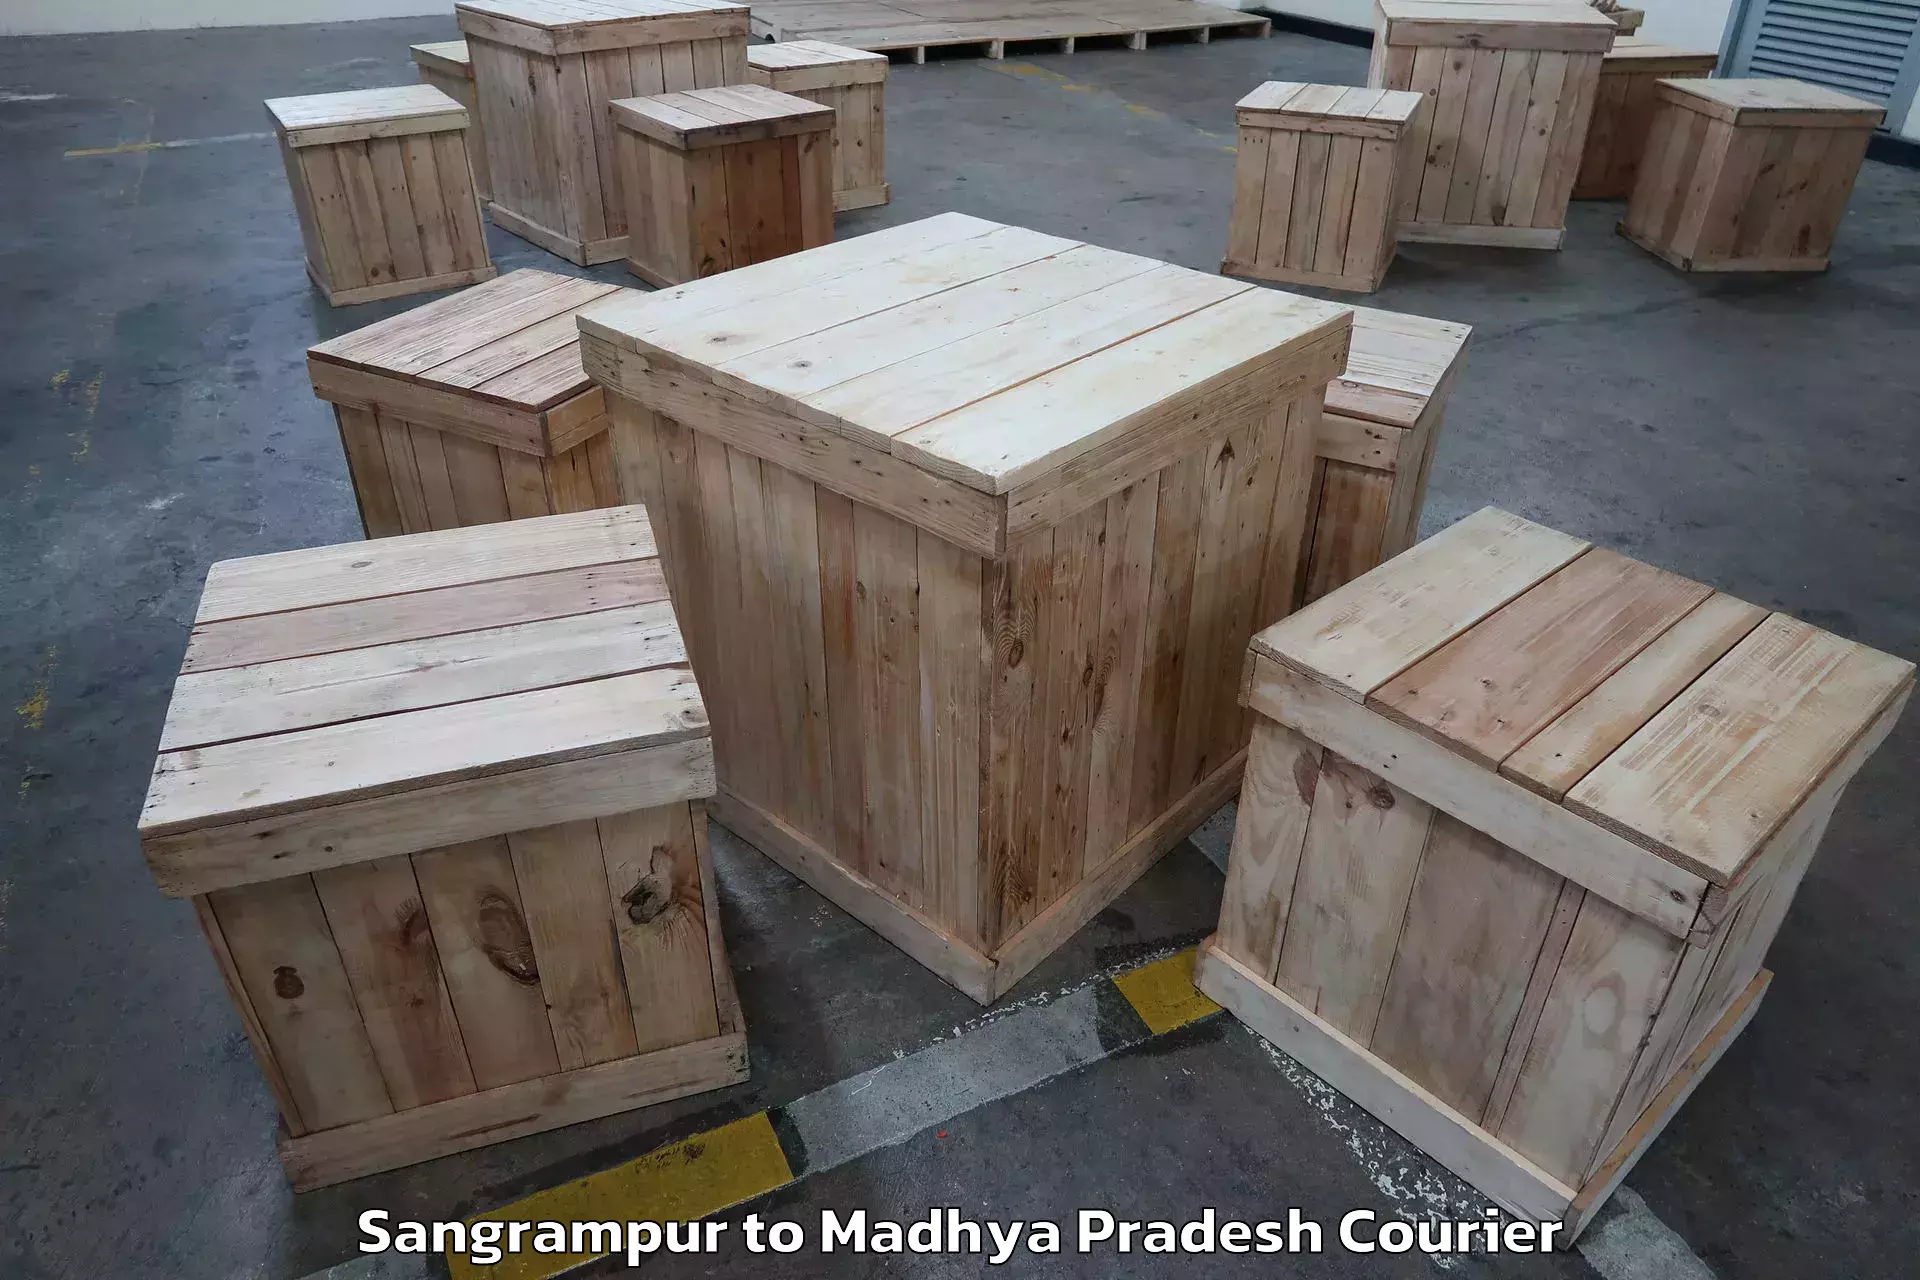 Furniture moving experts Sangrampur to Shahgarh